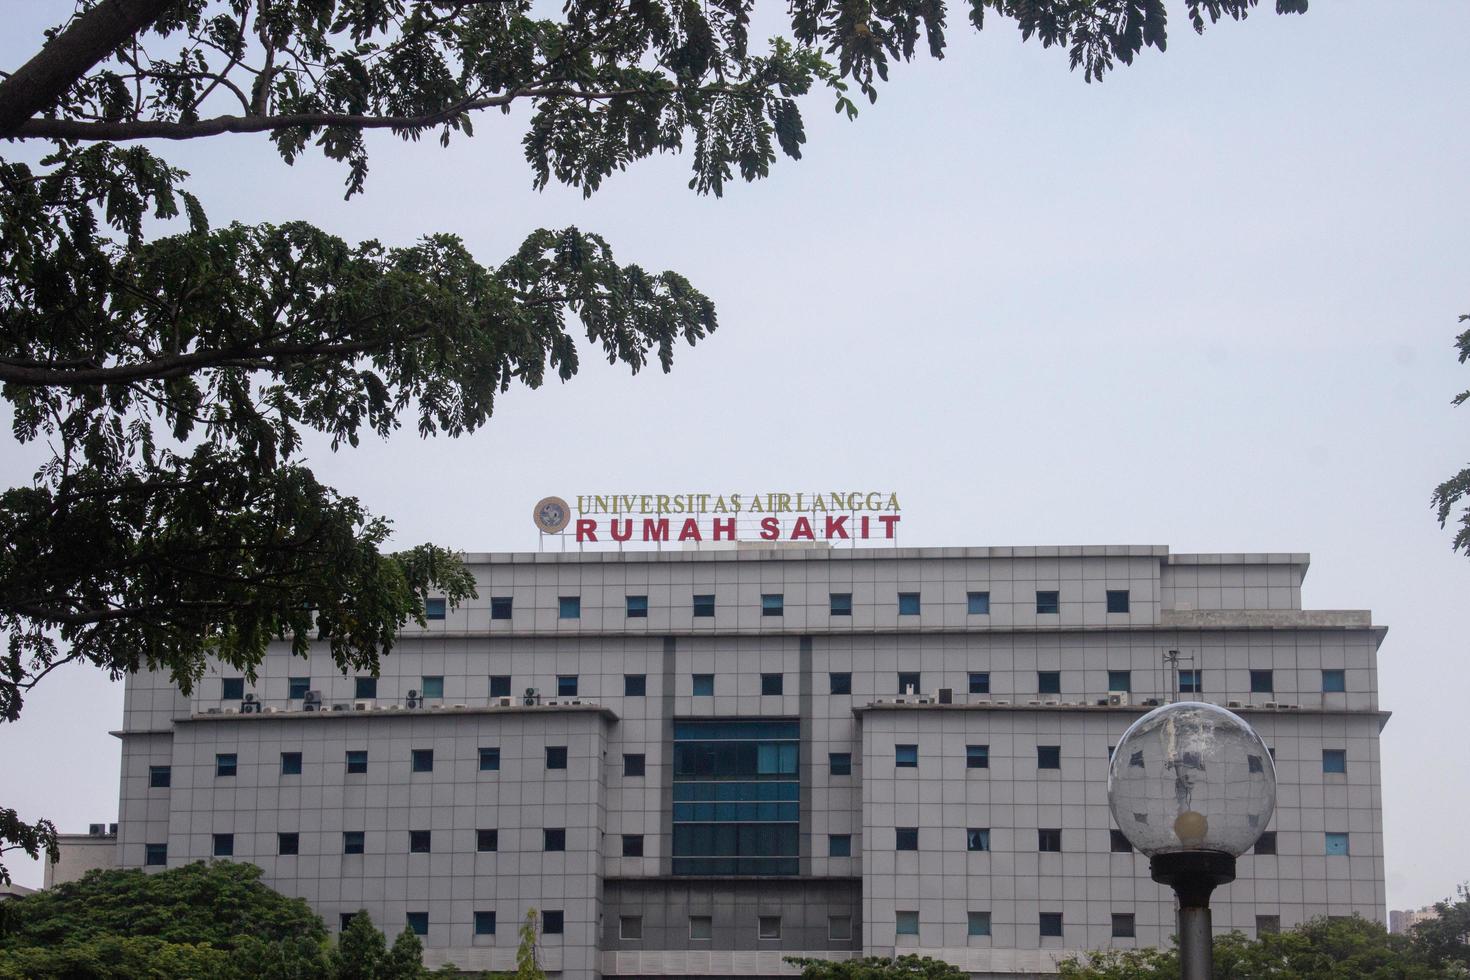 teken bord van luchtlangga ziekenhuis oftewel Rumah sakit luchtlangga. Daarnaast behandelen patiënten, deze is ook een plaats voor medisch studenten naar praktijk of leertijd. foto